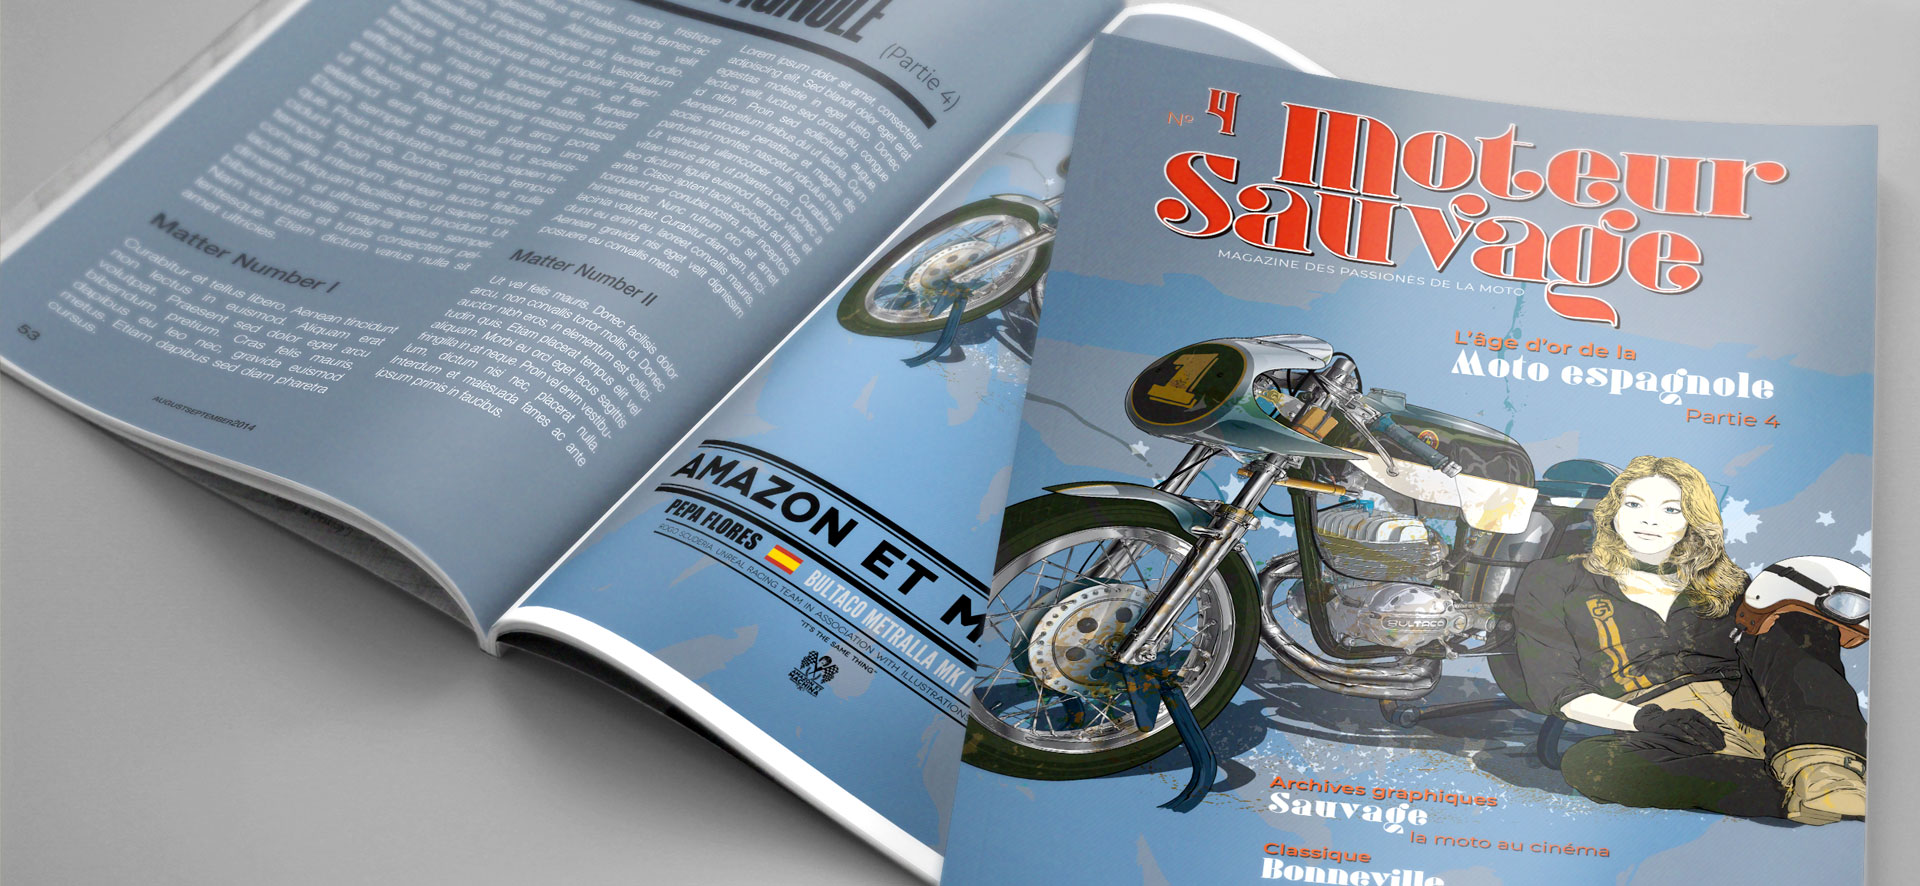 Pepa Flores y su Bultaco Metralla. Ilustración interior y portada magazine.